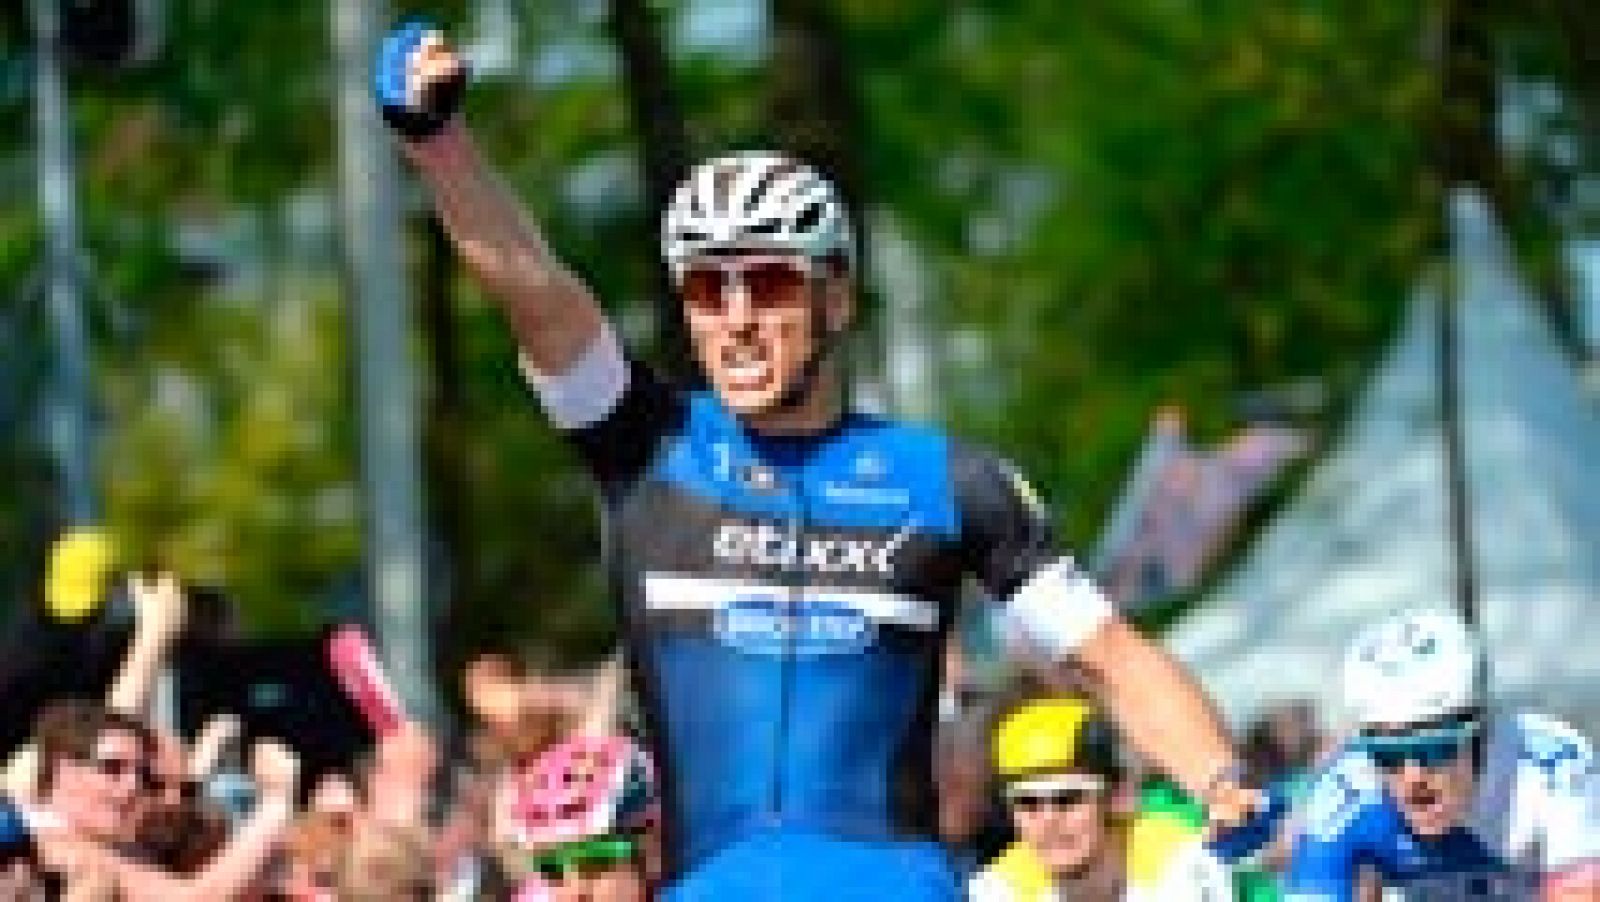 Marcel Kittel, corredor del Etixx-Quick Step, se ha adjudicado su segunda etapa consecutiva en este Giro 2016 otra vez al sprint y le arrebata el maillot rosa al holandés Tom Dumoulin, líder de las dos primeras jornadas en la ronda italiana. [Giro de Italia 2016 en directo, hasta el 29 de mayo en TVE y RTVE.es]